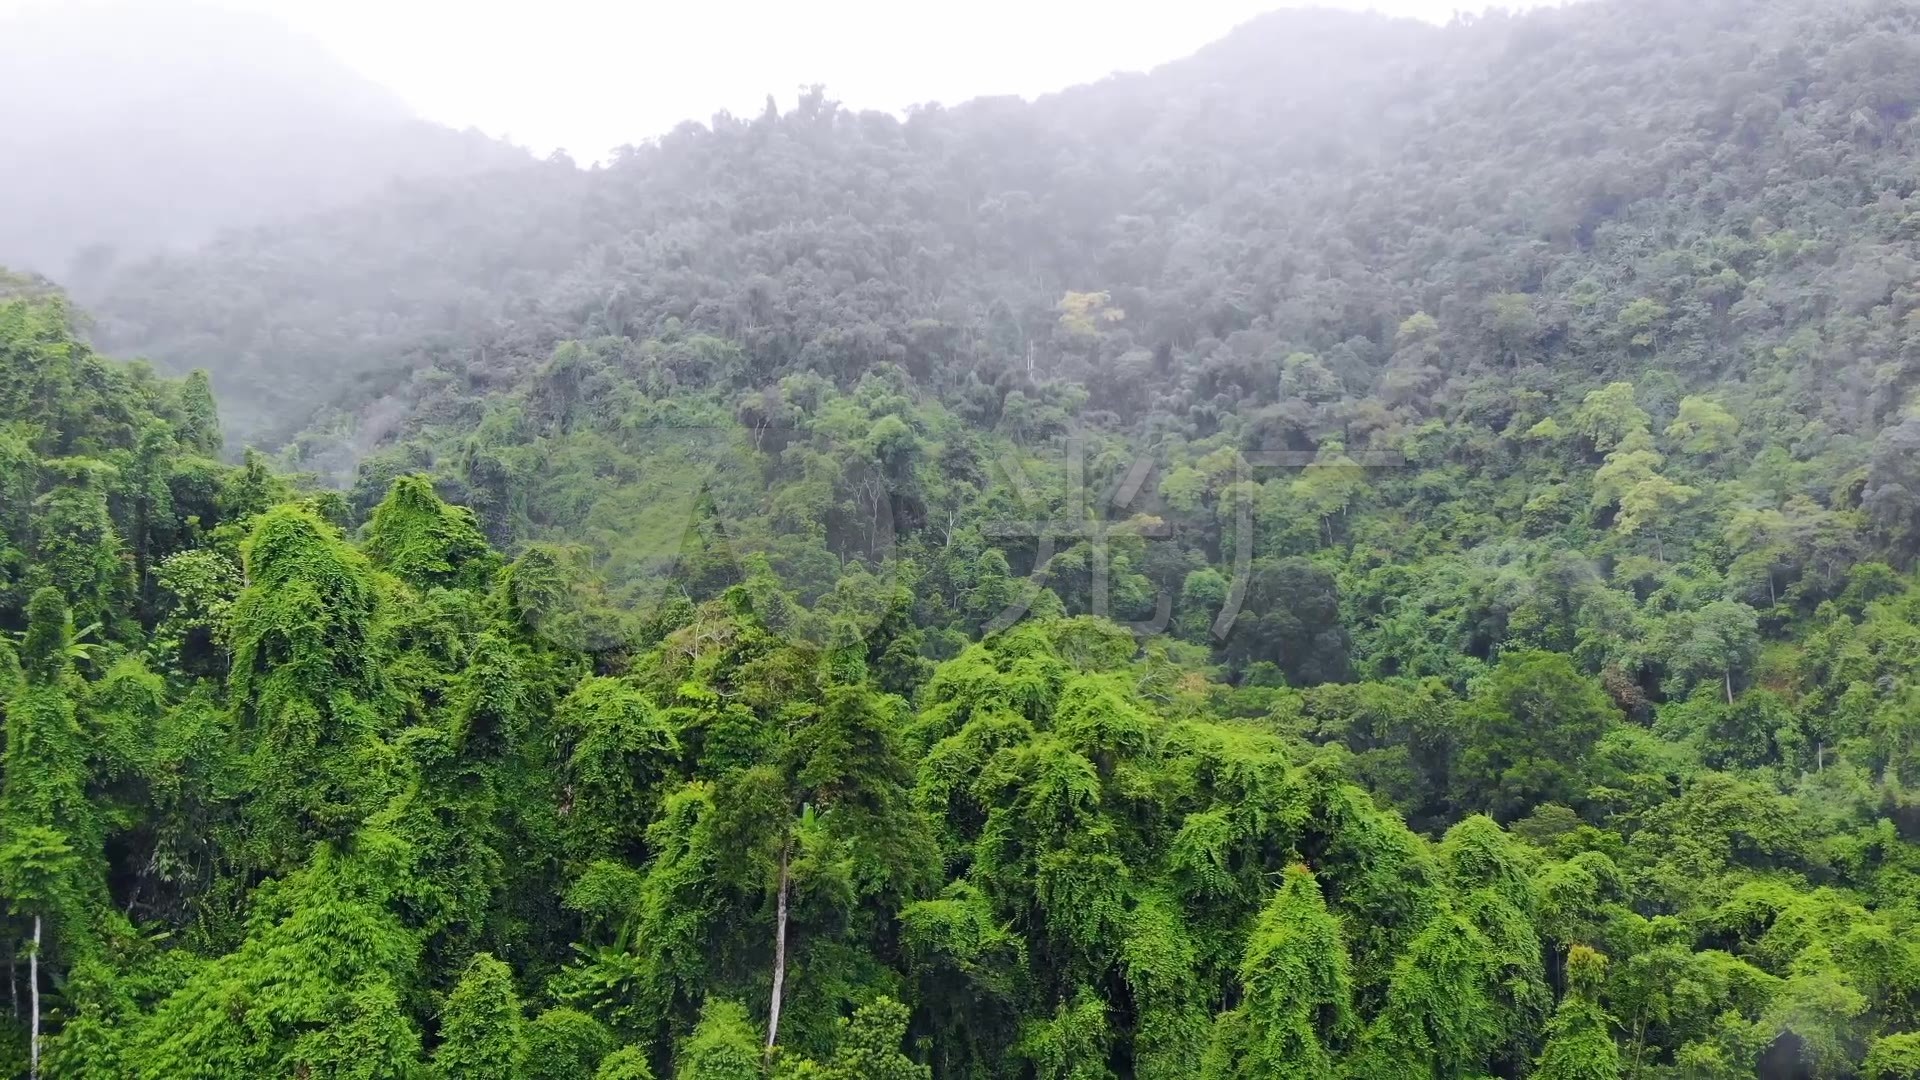 印度喀拉拉邦热带森林 库存图片. 图片 包括有 旅游业, 目的地, 工厂, 假期, 青苔, 颜色, 周围 - 156723379